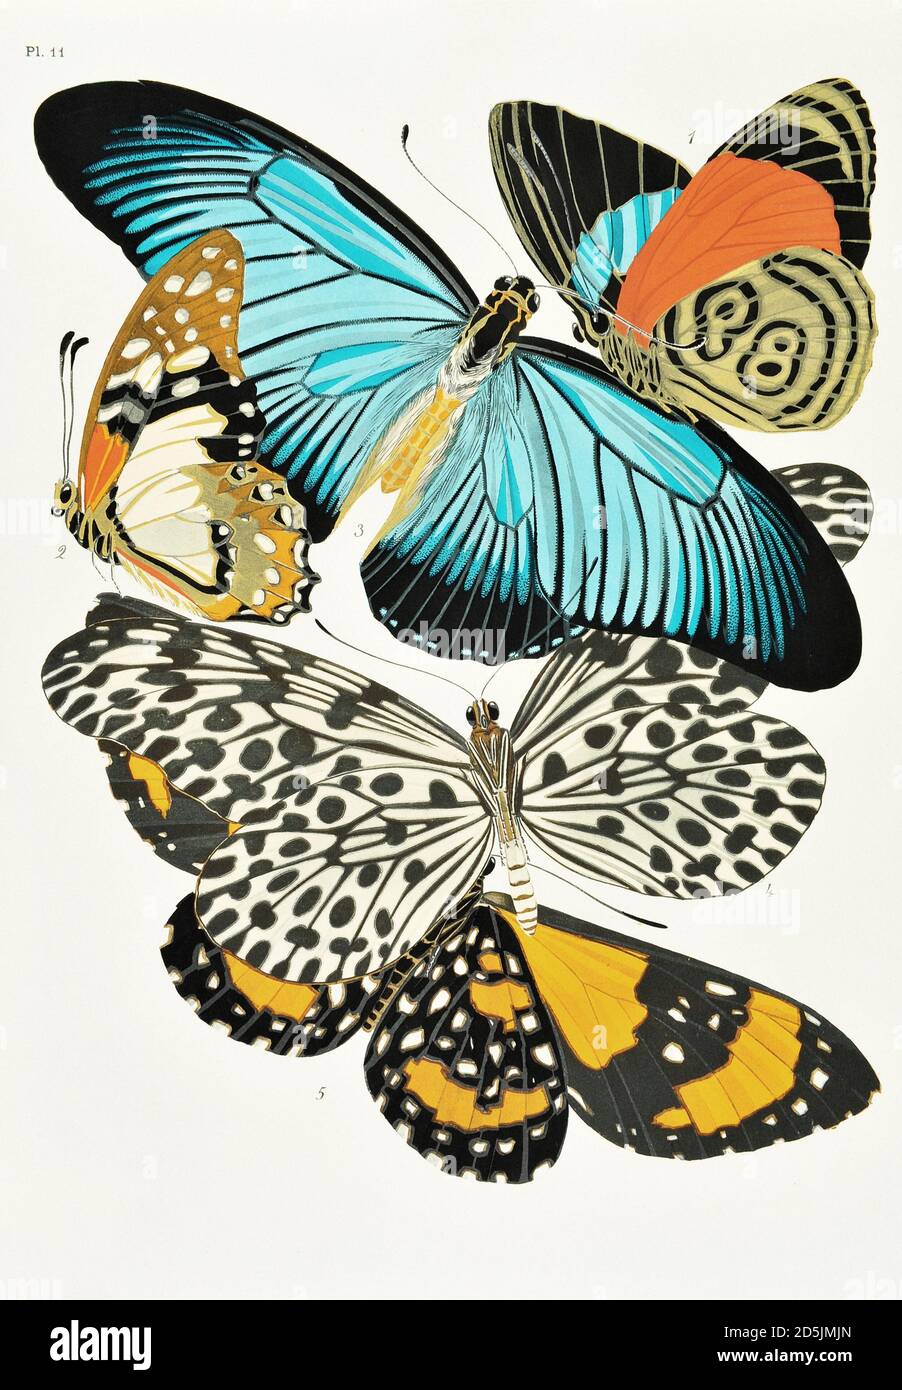 Mariposas: Veinte placas de fototipo coloreadas al patrón. PL XI 1. Callicore marchali (Colombia) 2. Papilio dylades (Congo) 3. Papilio zalmoxis (Co Foto de stock